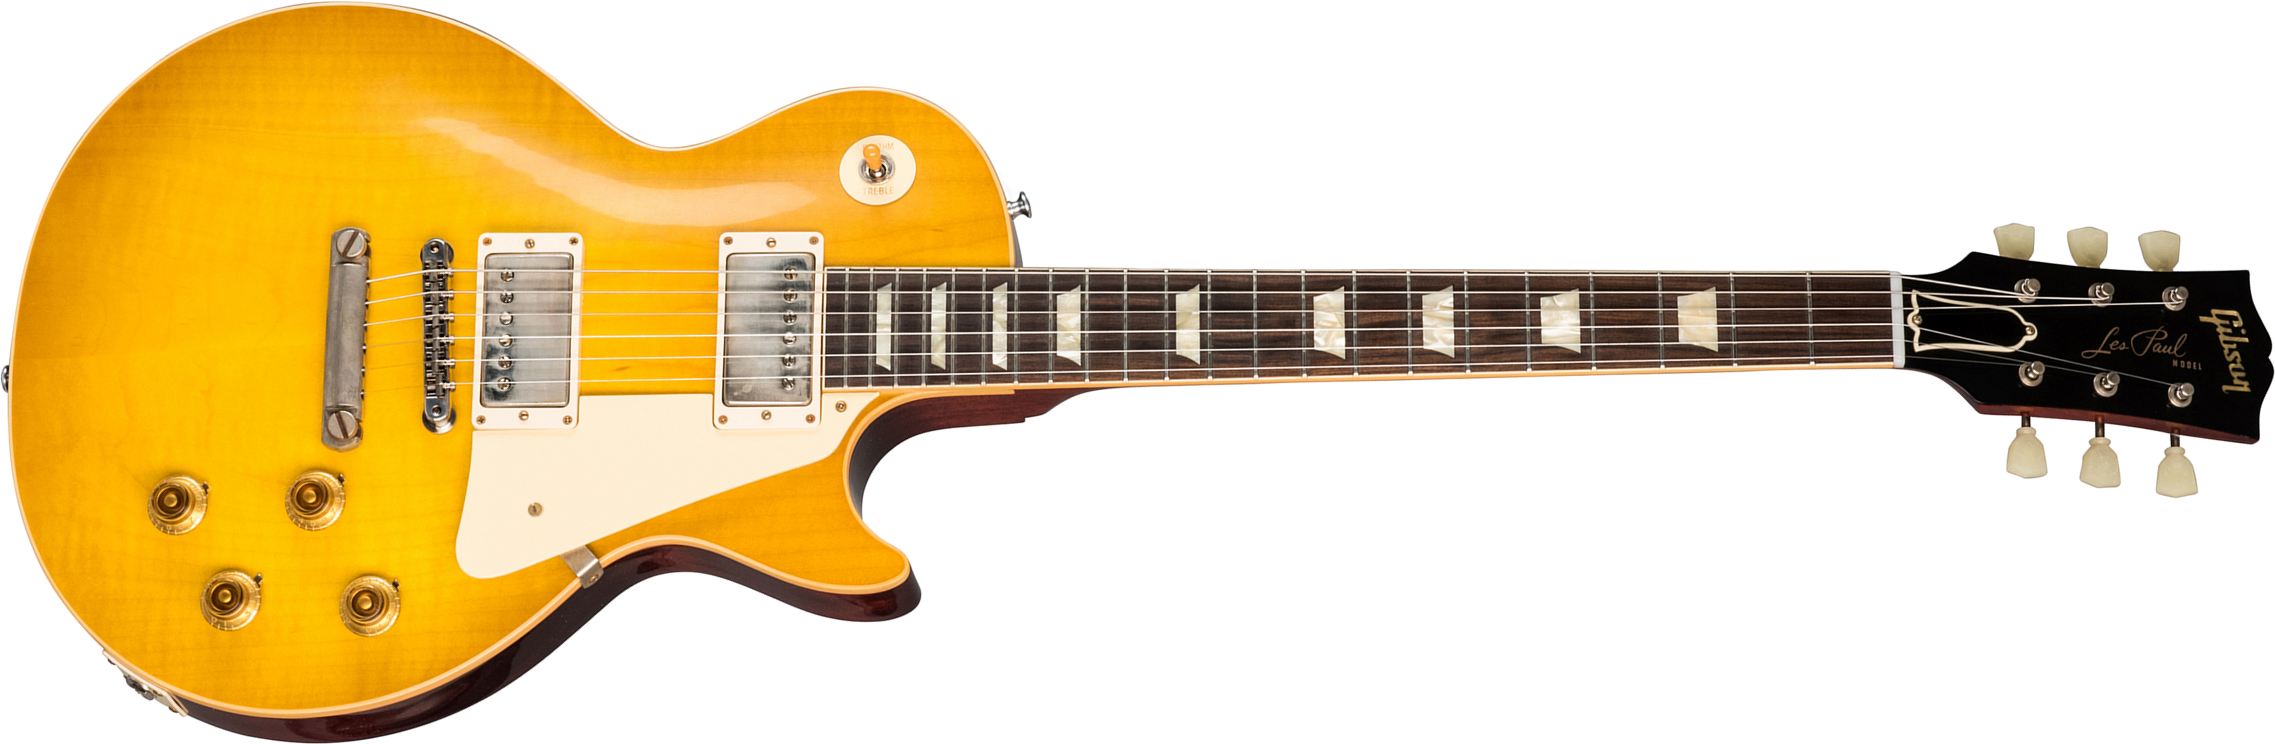 Gibson Custom Shop Les Paul Standard 1958 Reissue 2019 2h Ht Rw - Vos Lemon Burst - Guitarra eléctrica de corte único. - Main picture